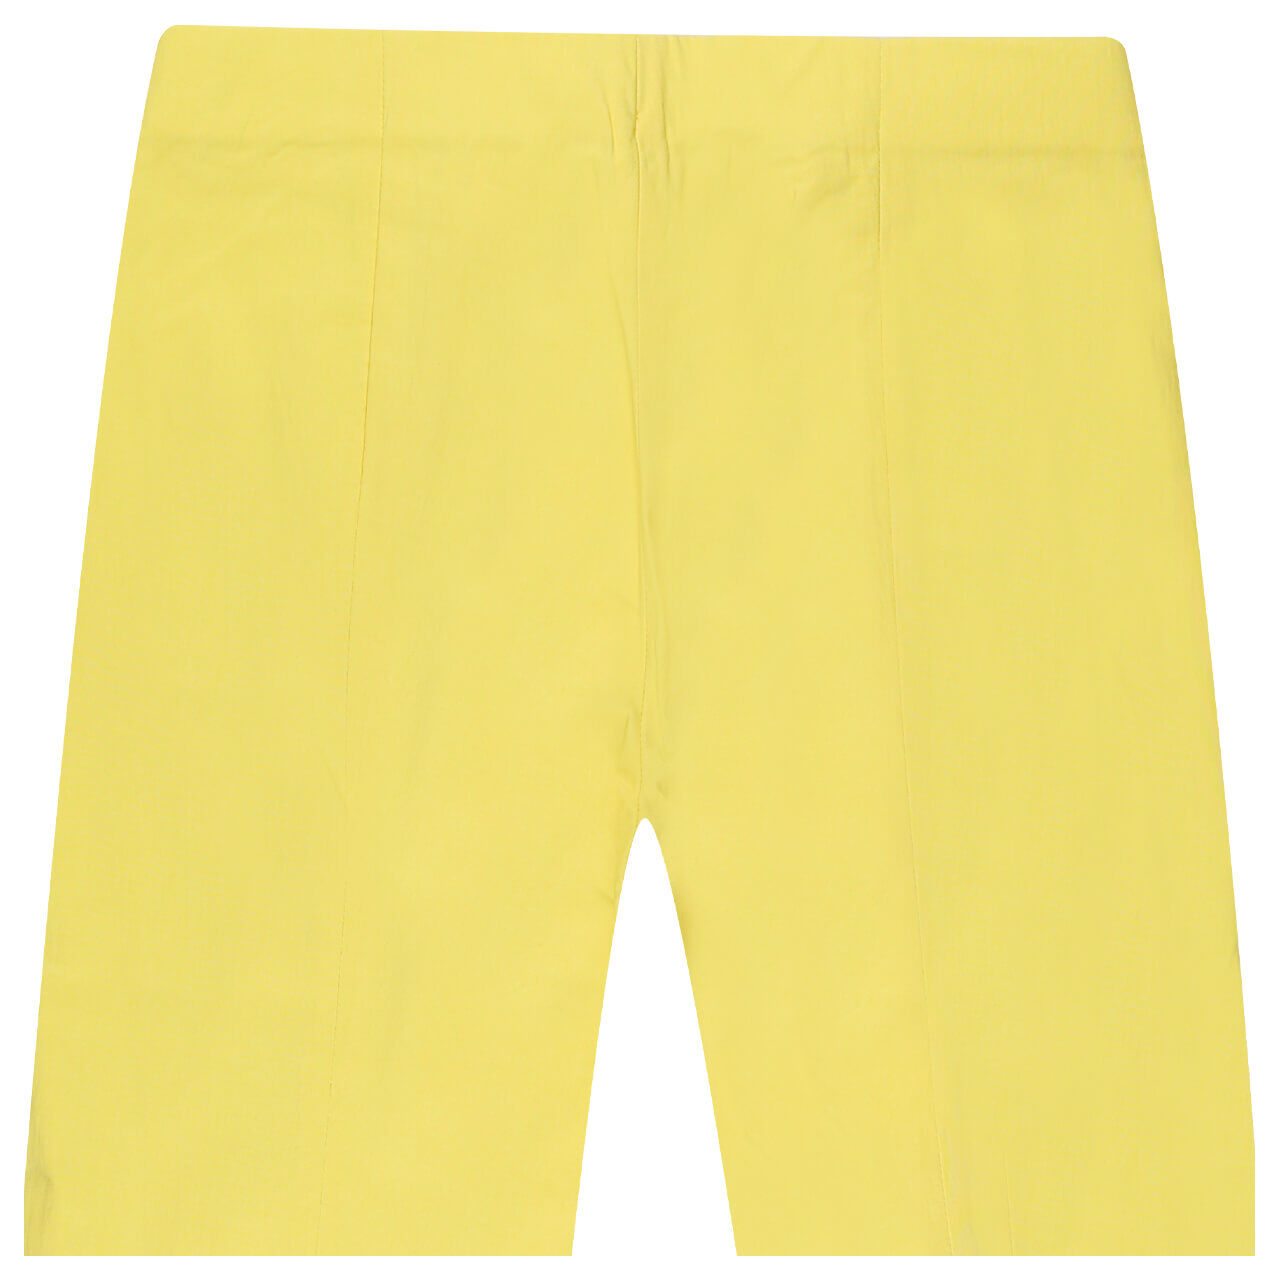 Mekstone M.K. Ines Bengalin Hose bright yellow